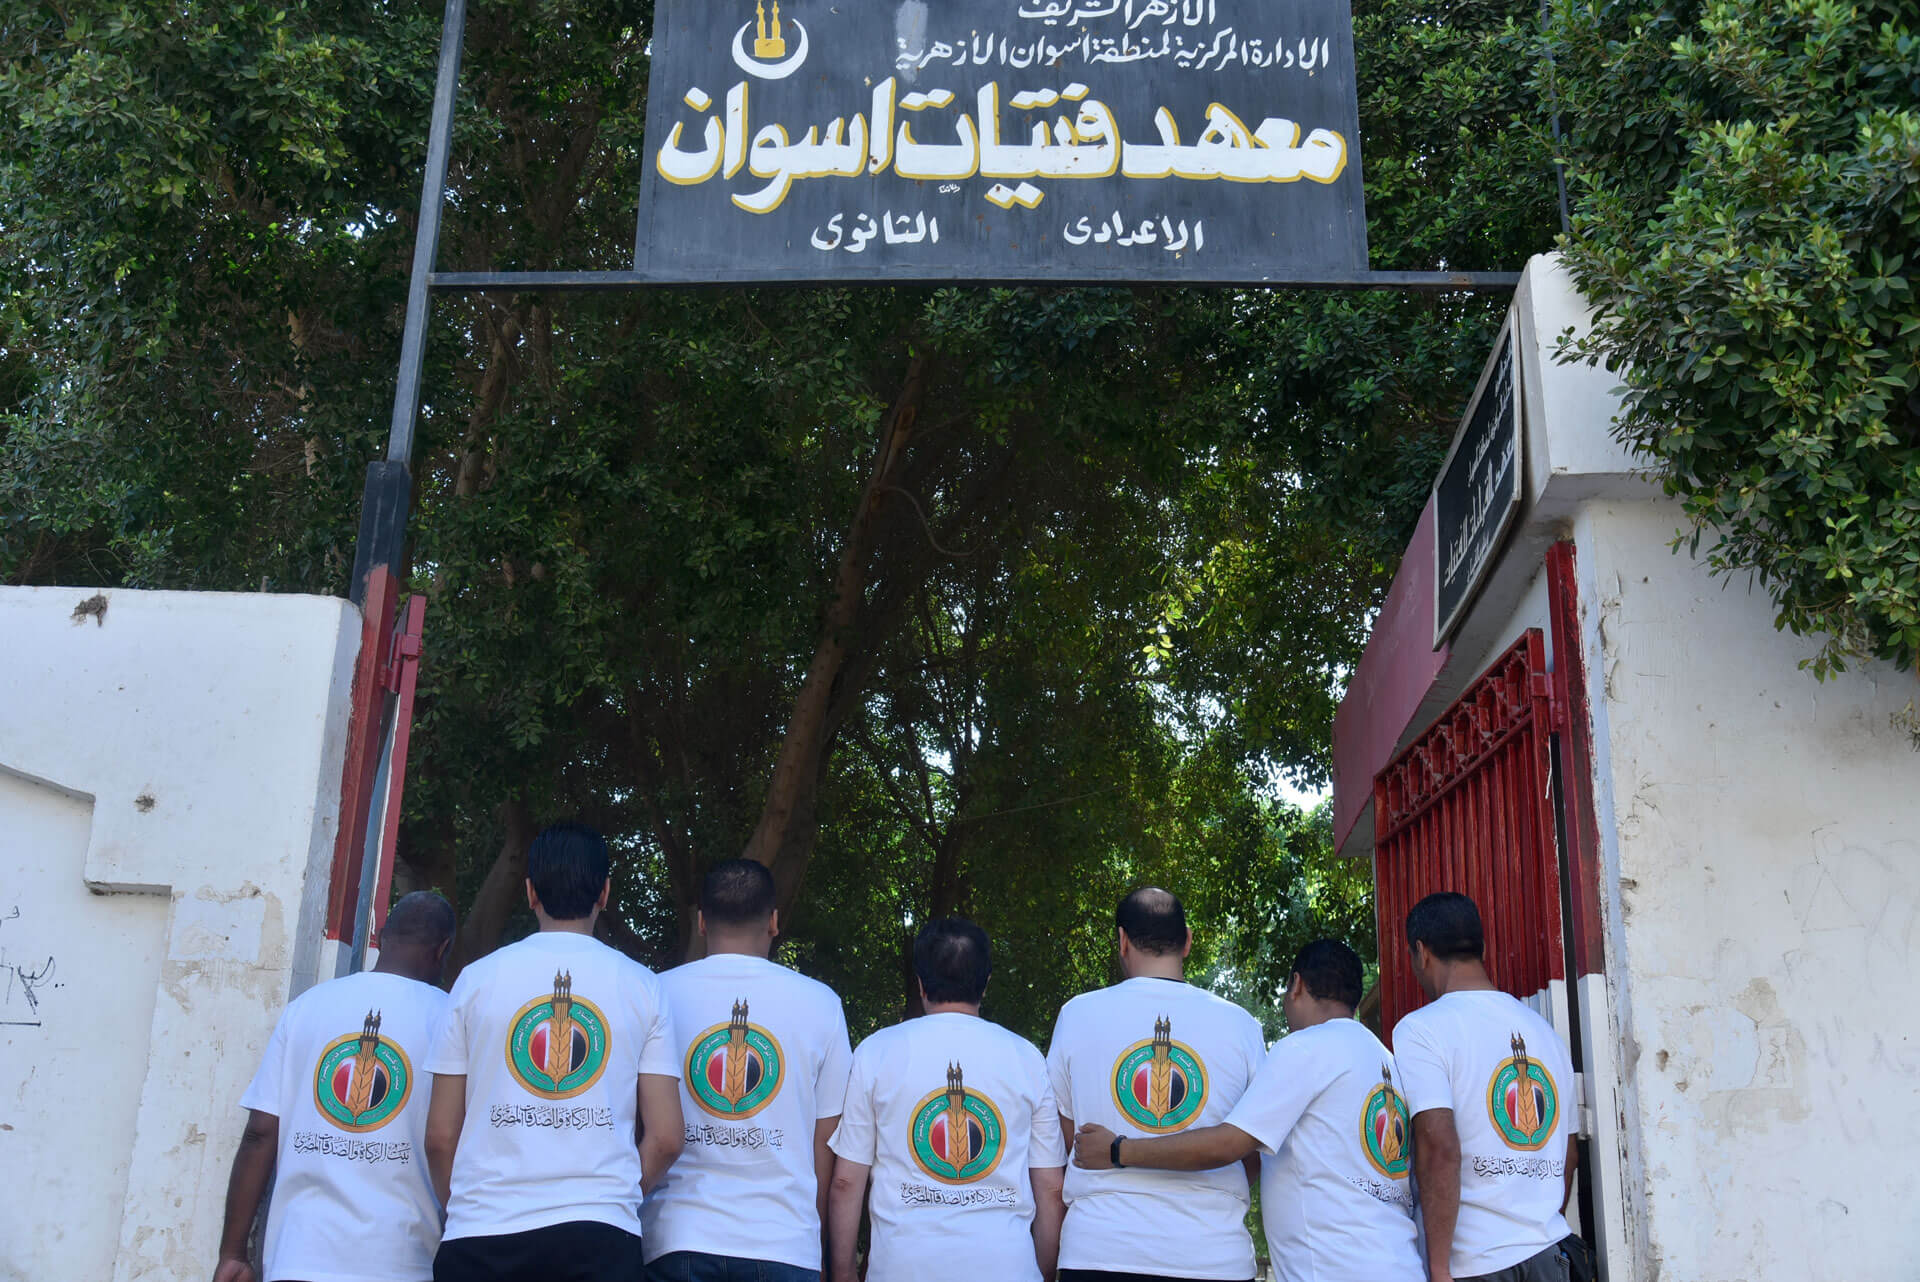 8بيت-الزكاة-والصدقات-المصري-يبدأ-حملة-لتوزيع--١٠٠-ألف-شنطة-مدرسية-بمسلتزماتها-على-الأيتام-وذوي-الهمم-في-المدارس-العامة-والأزهرية.jpg